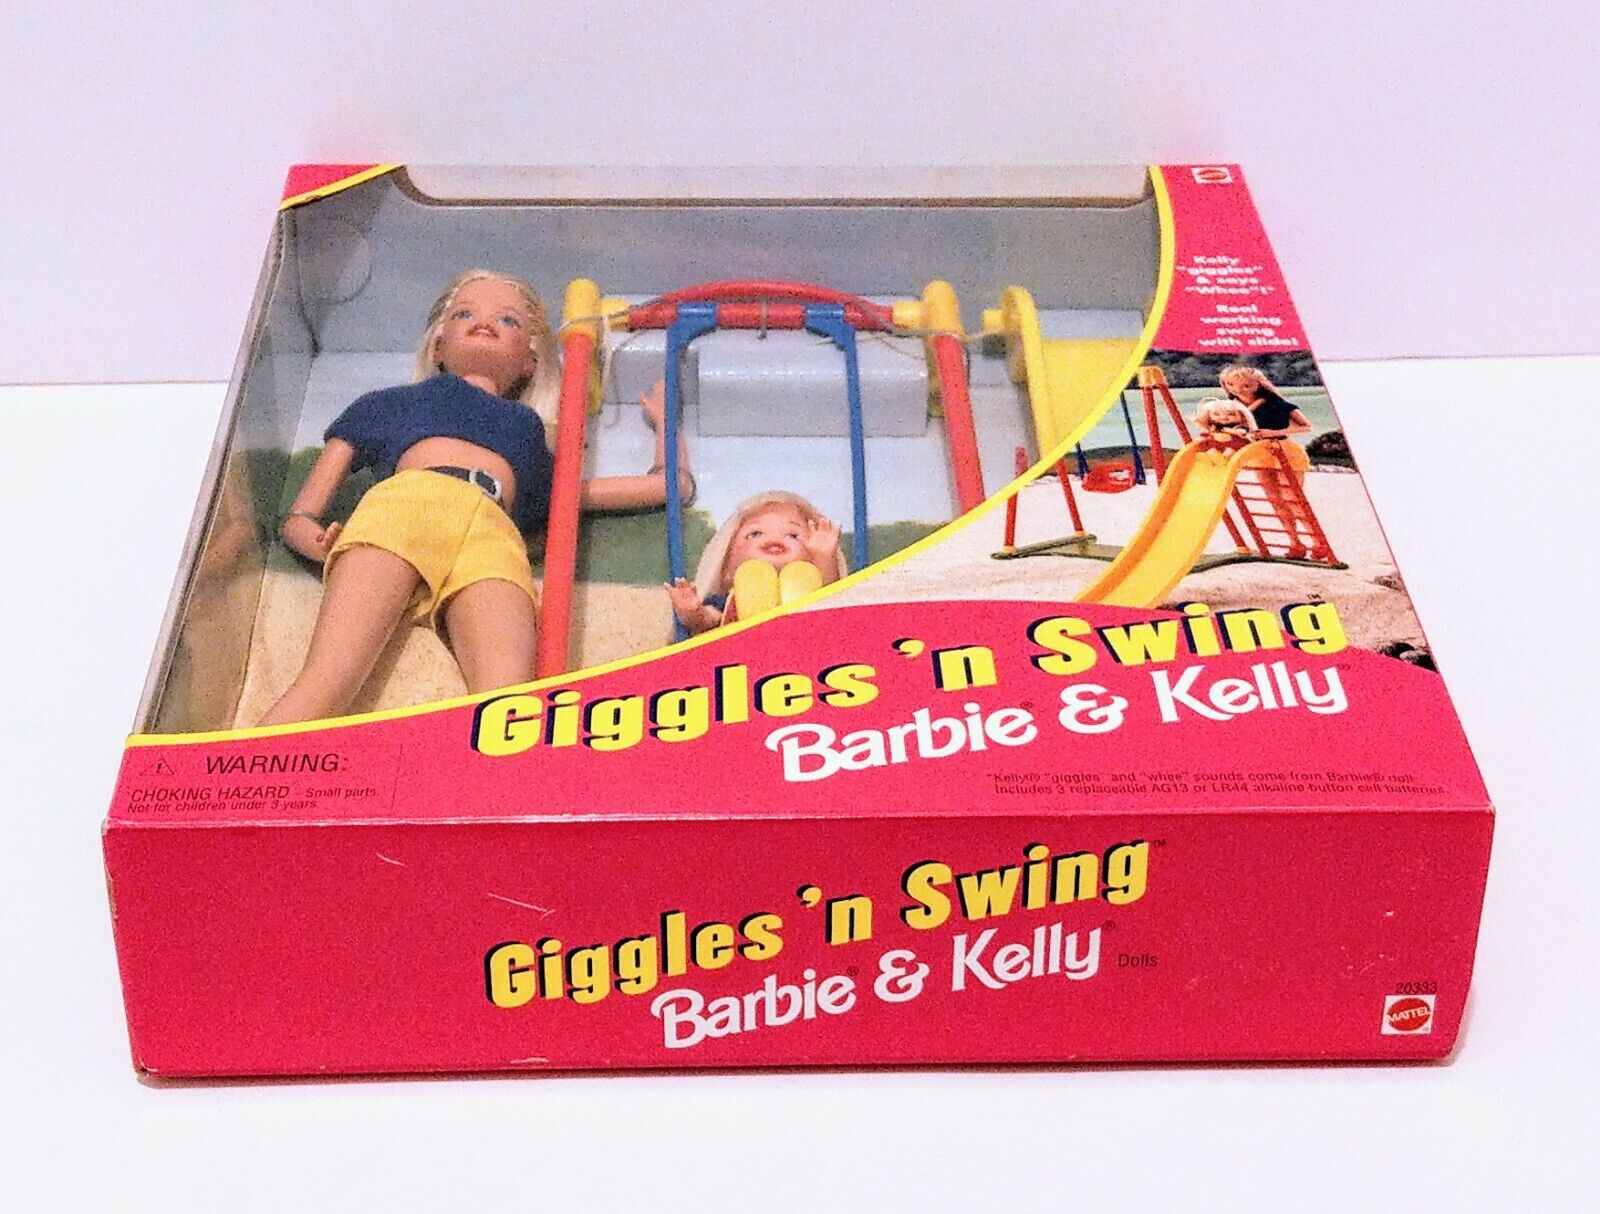 BARBIE GIGGLES 'N SWING. BARBIE & KELLY VINTAGE DOLLS